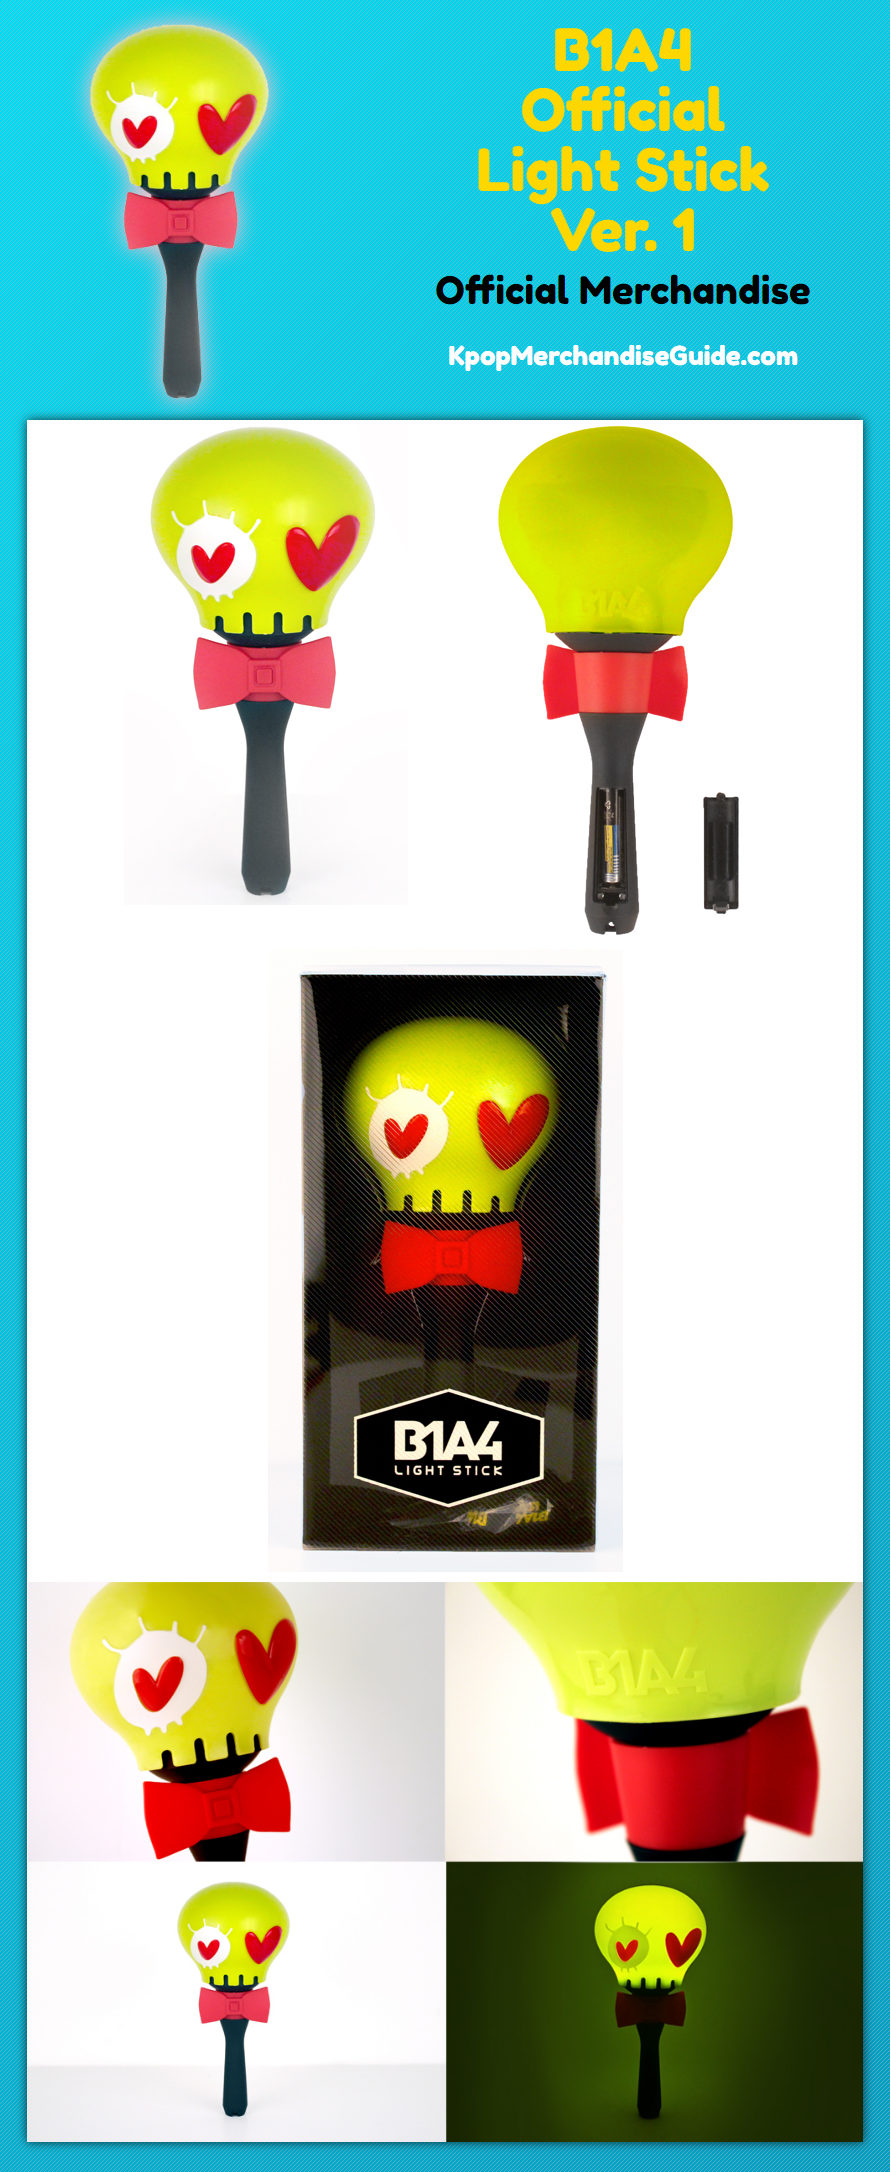 B1A4 Official Light Stick (Version 1)